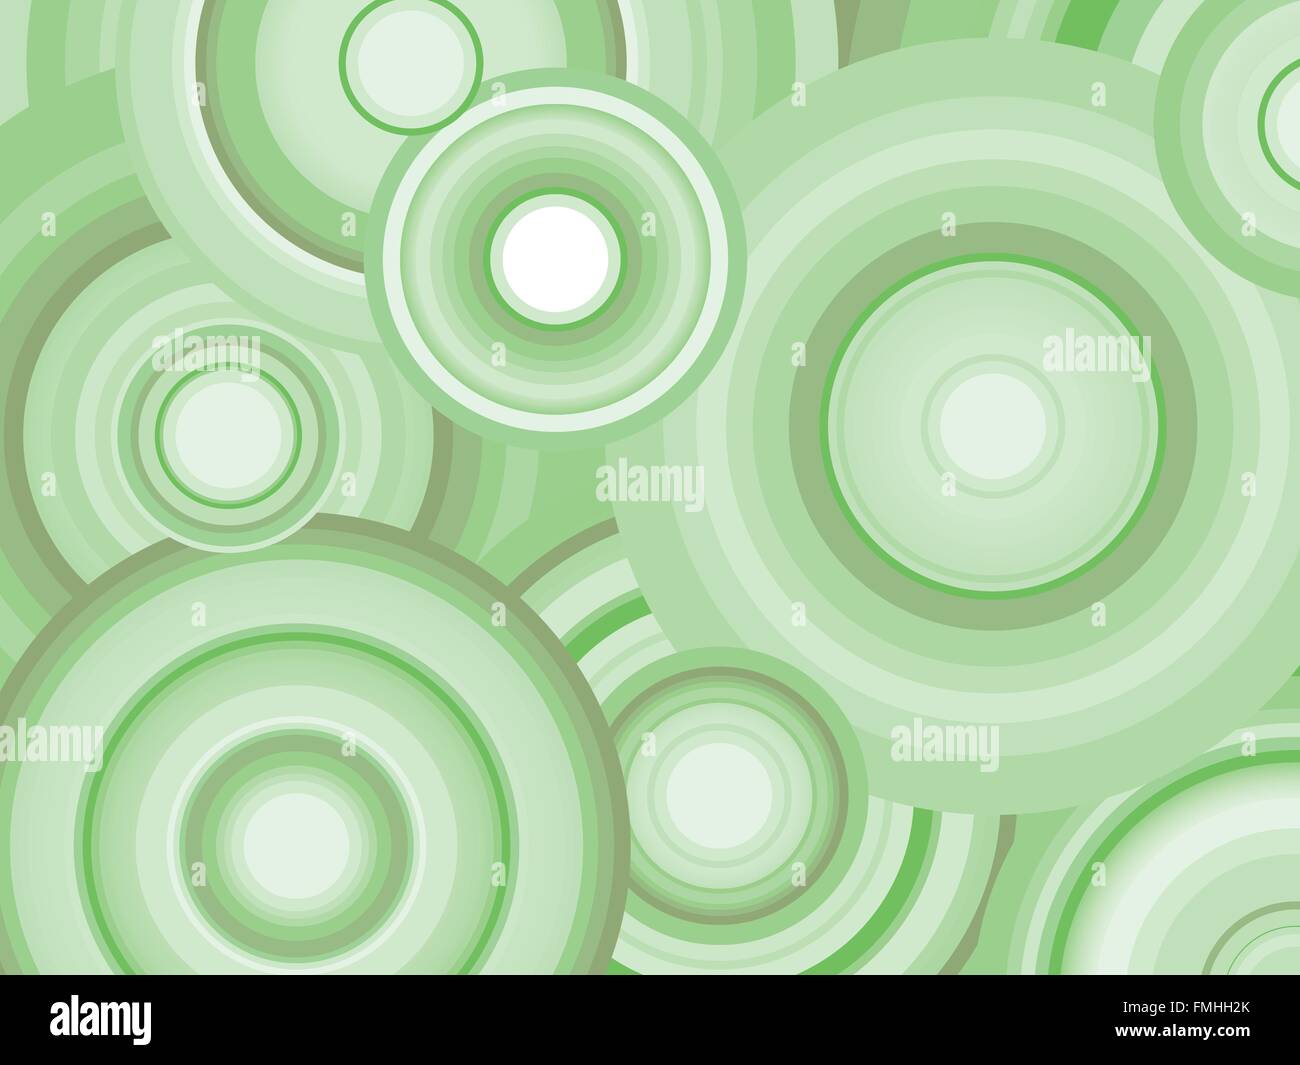 Zusammenfassung Hintergrund mit grünen schattigen konzentrische Kreise Stock Vektor